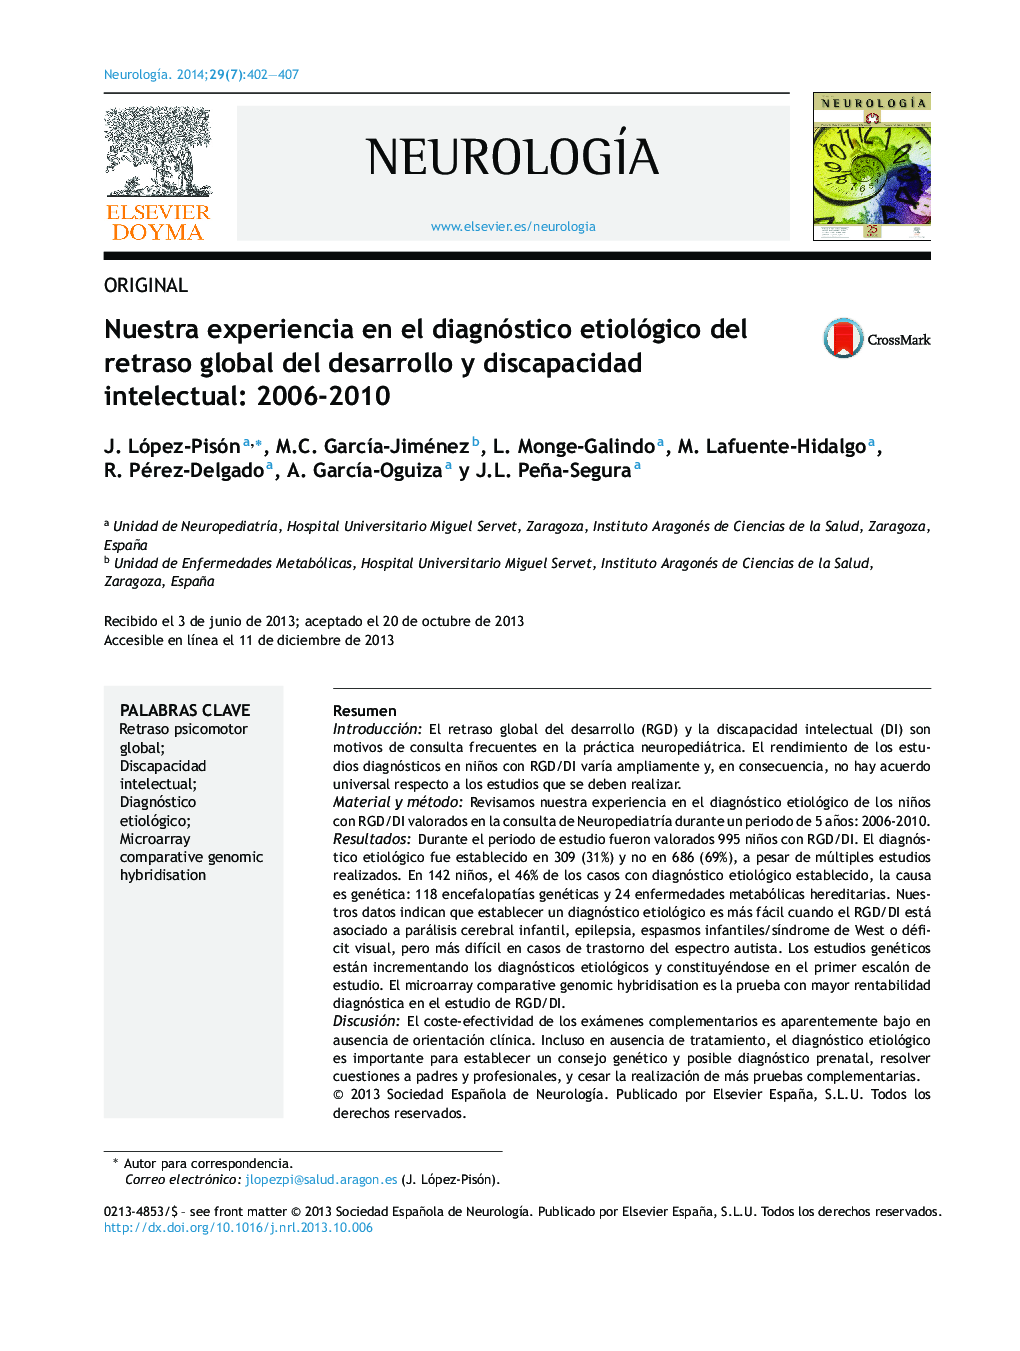 Nuestra experiencia en el diagnóstico etiológico del retraso global del desarrollo y discapacidad intelectual: 2006-2010